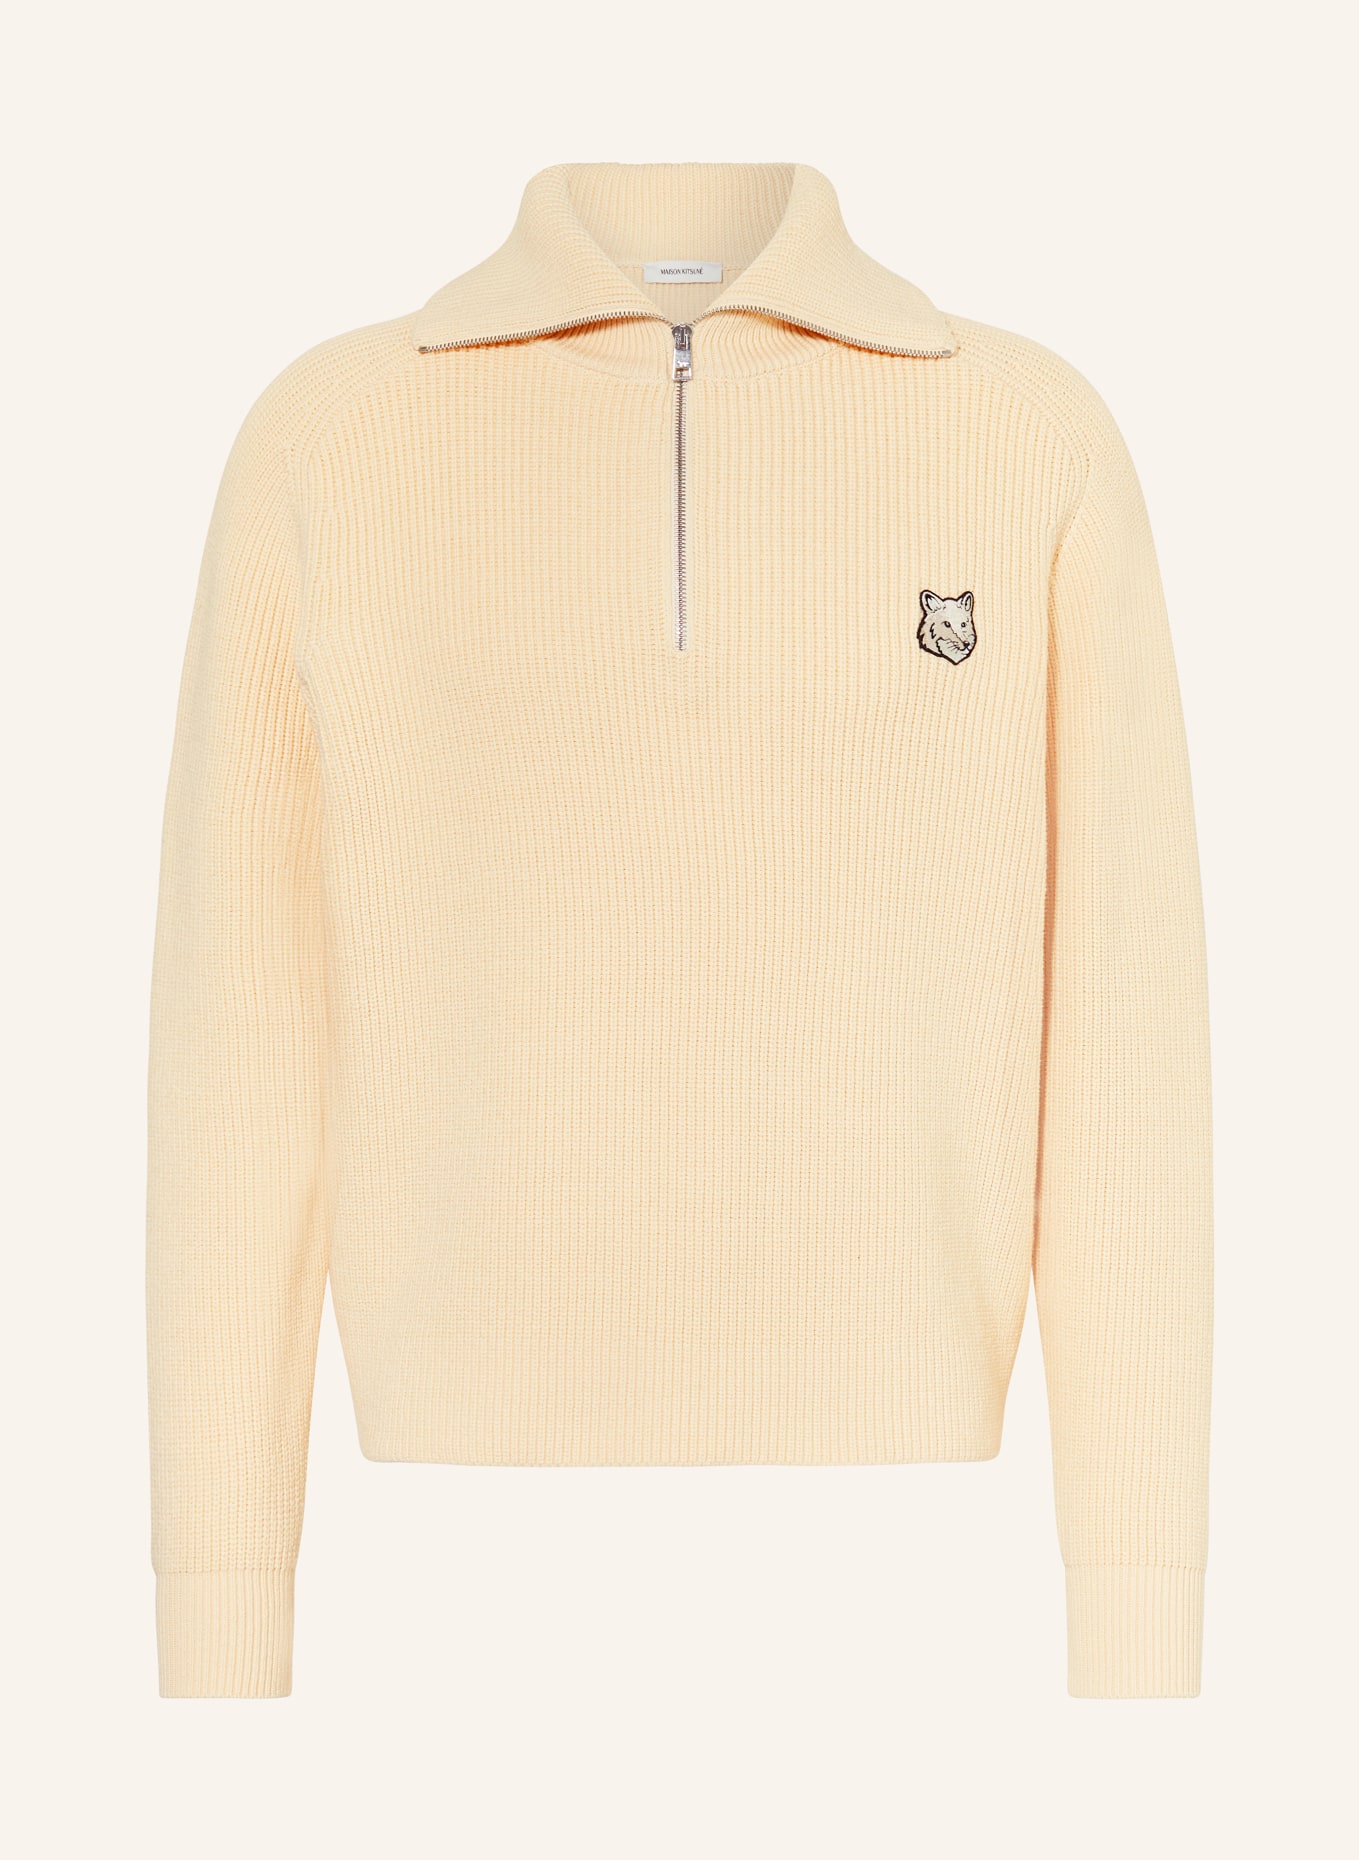 MAISON KITSUNÉ Half-zip sweater, Color: BEIGE (Image 1)